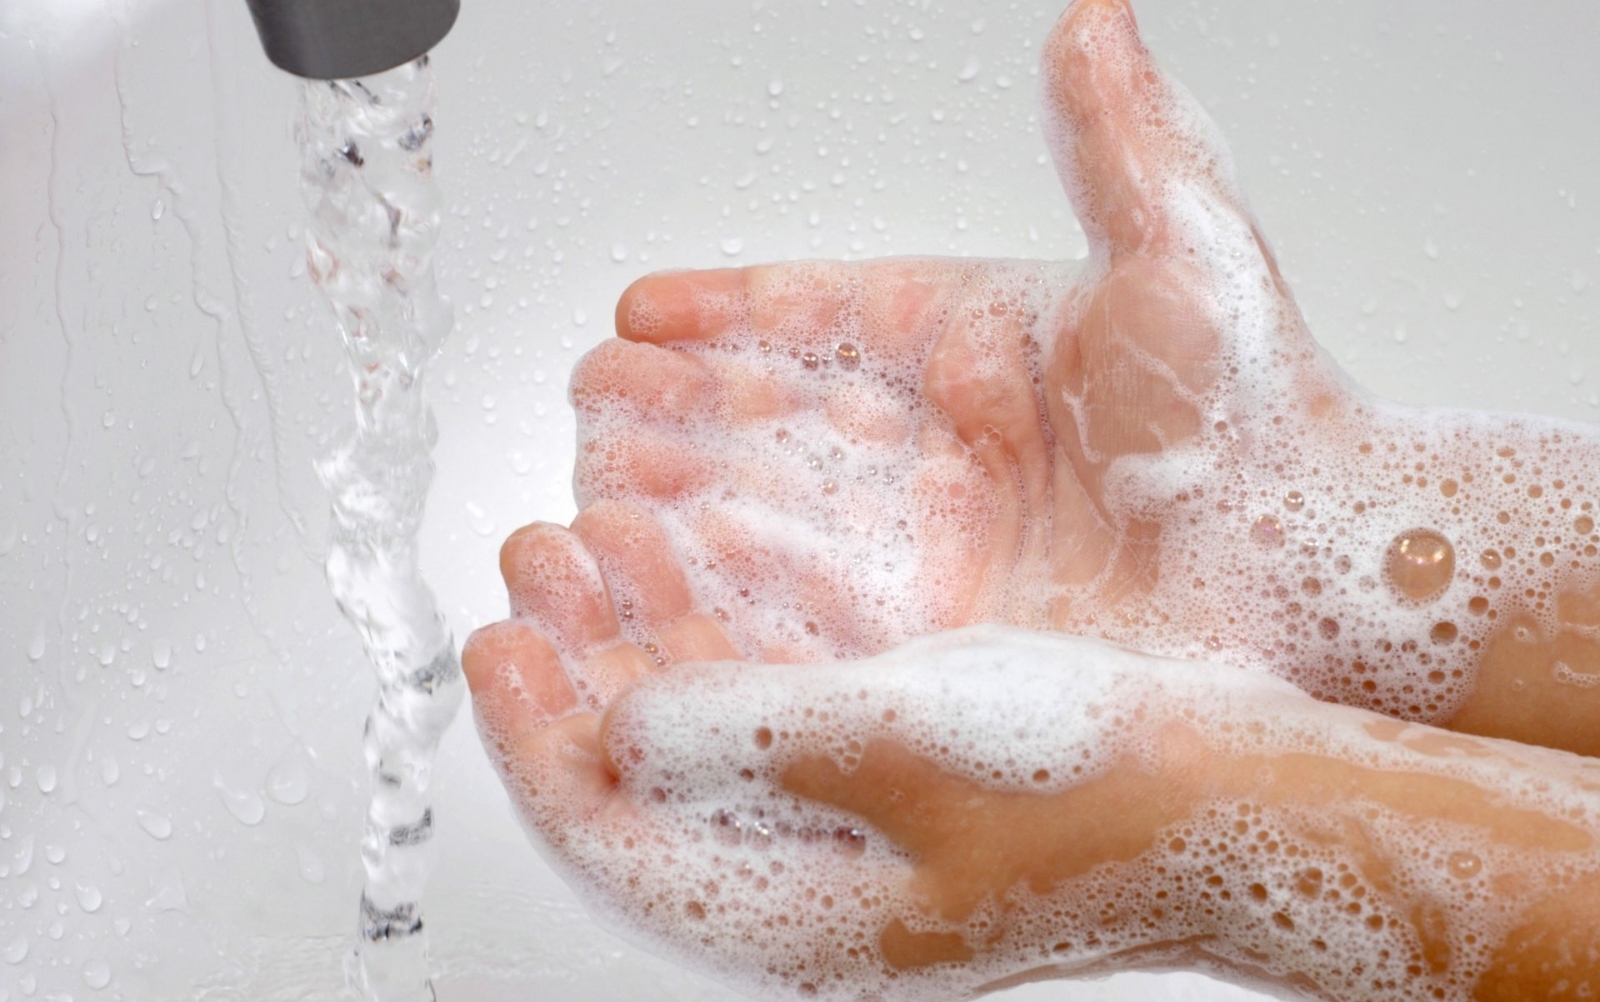 Aconsejan lavado de manos para prevenir enfermedades diarréicas